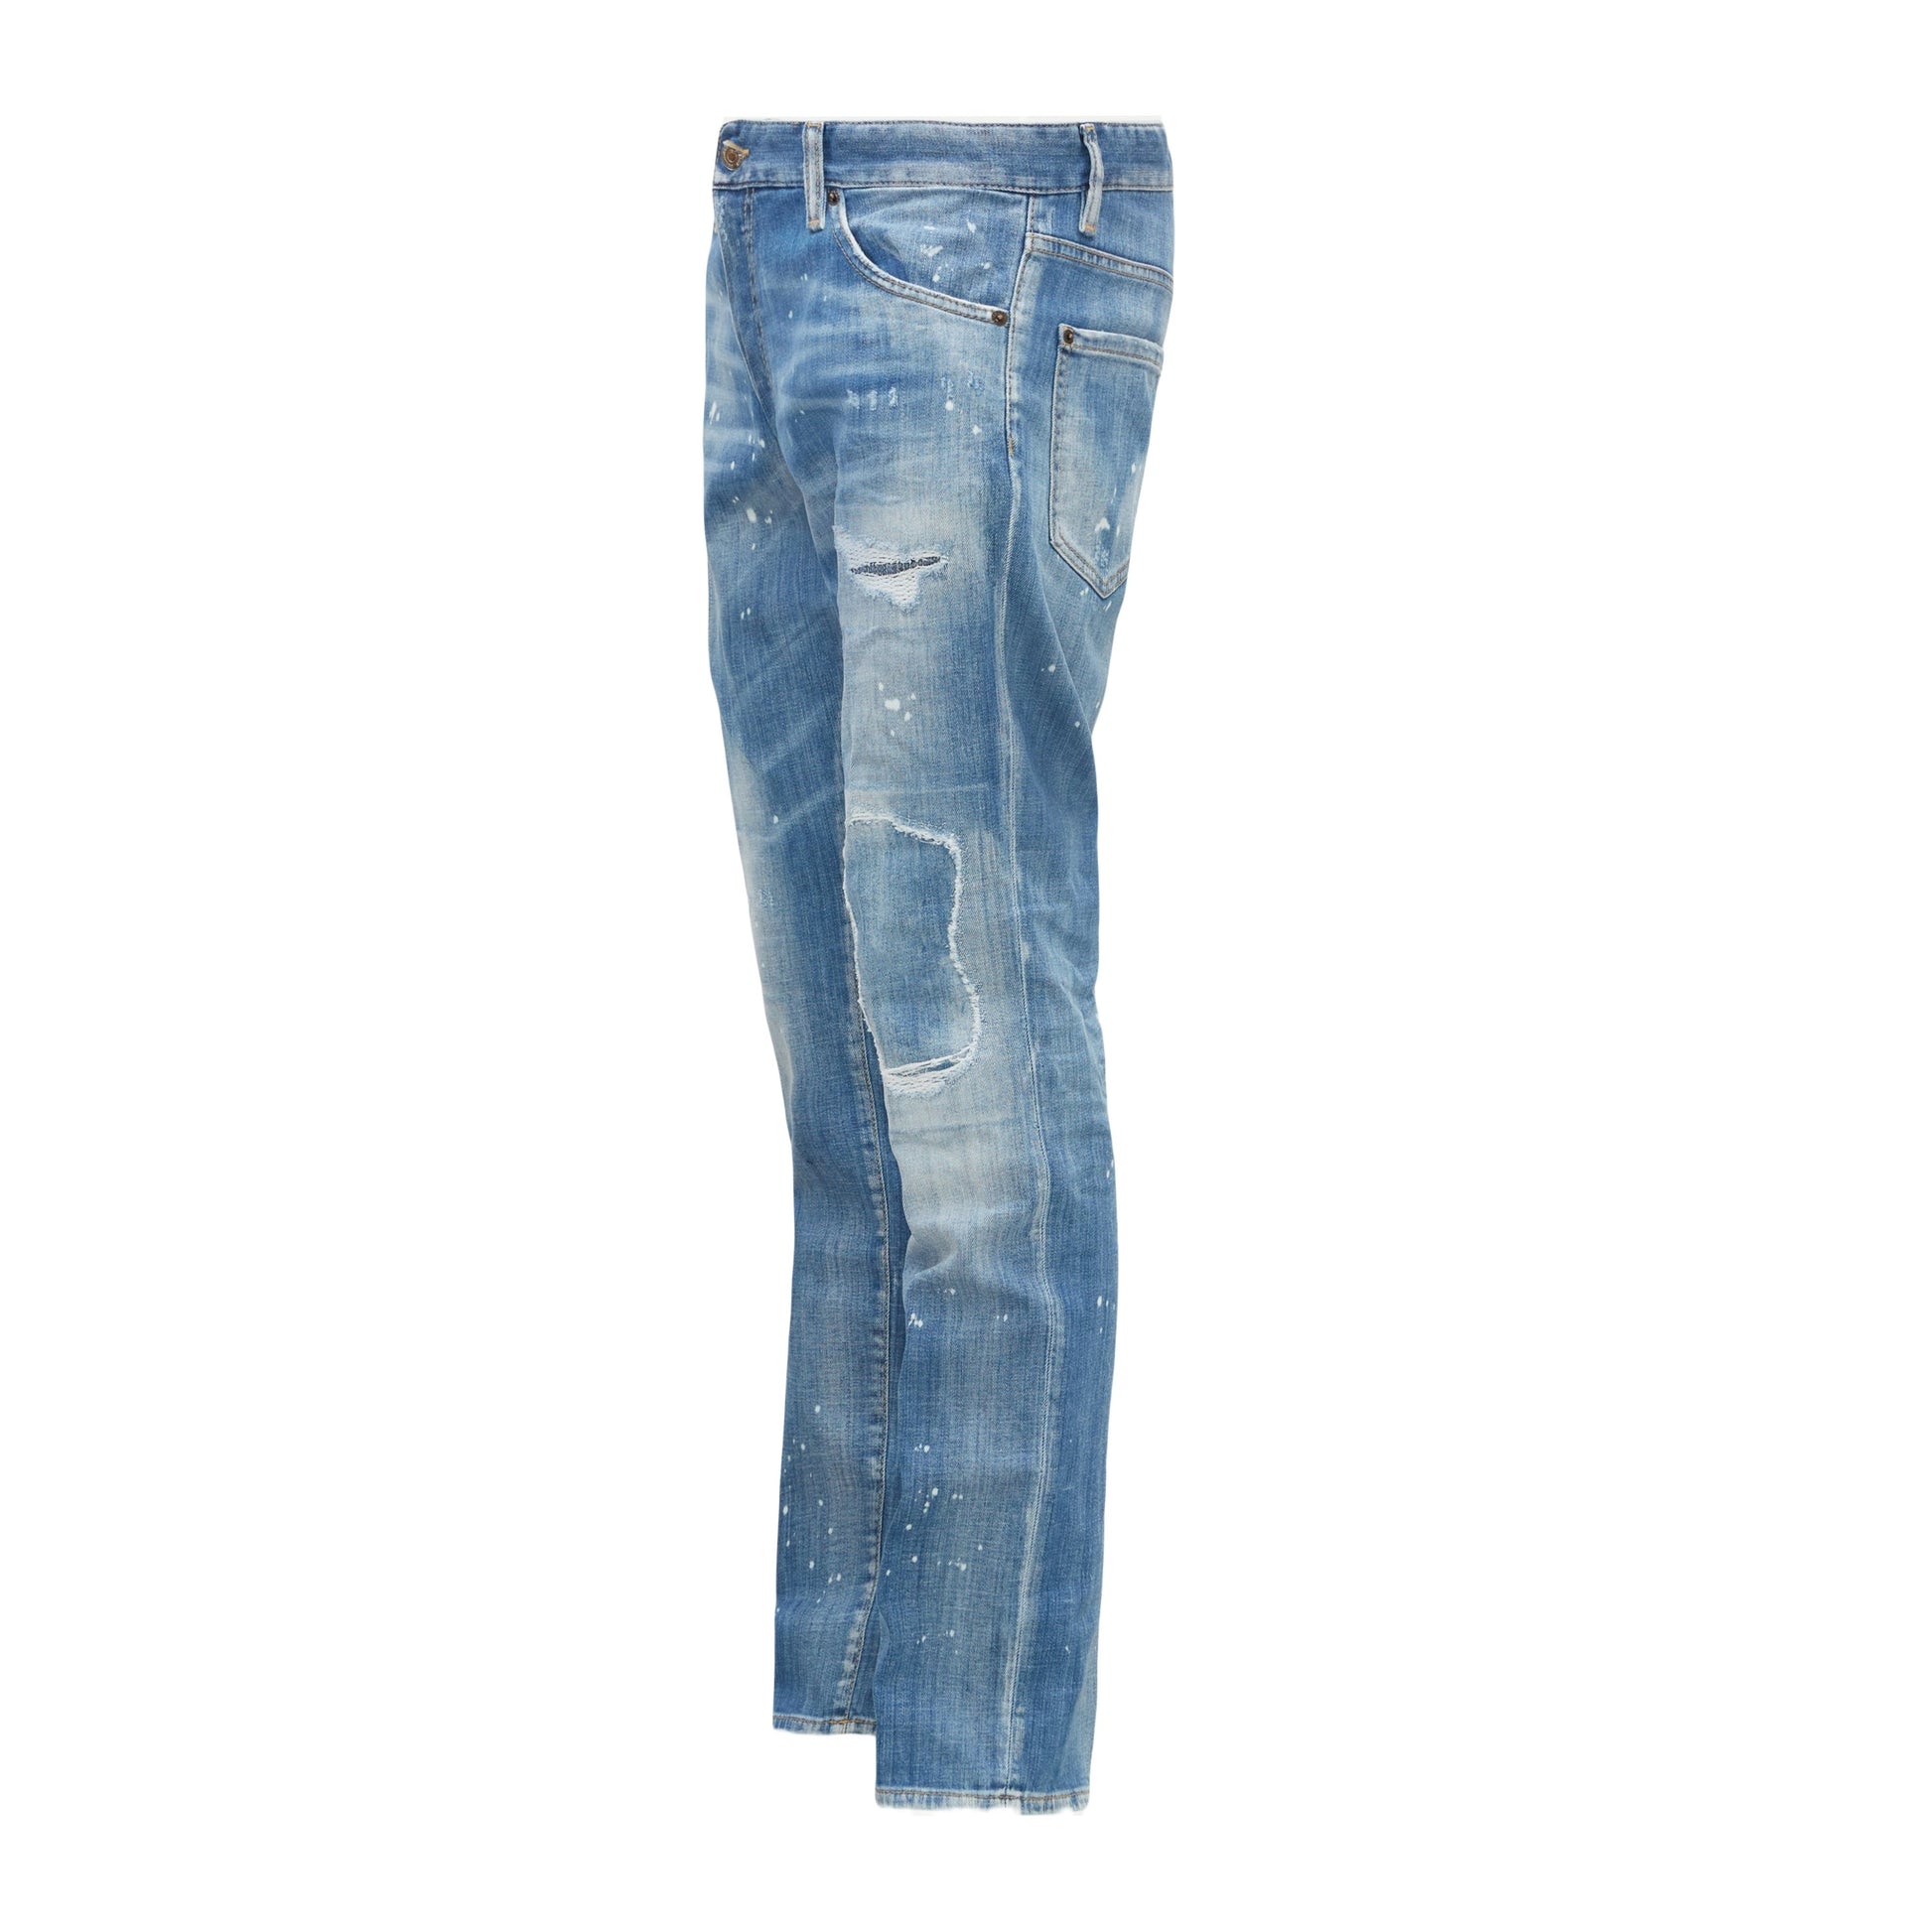 DSquared2 S74LB1252 Jean - 470 Blue - Escape Menswear